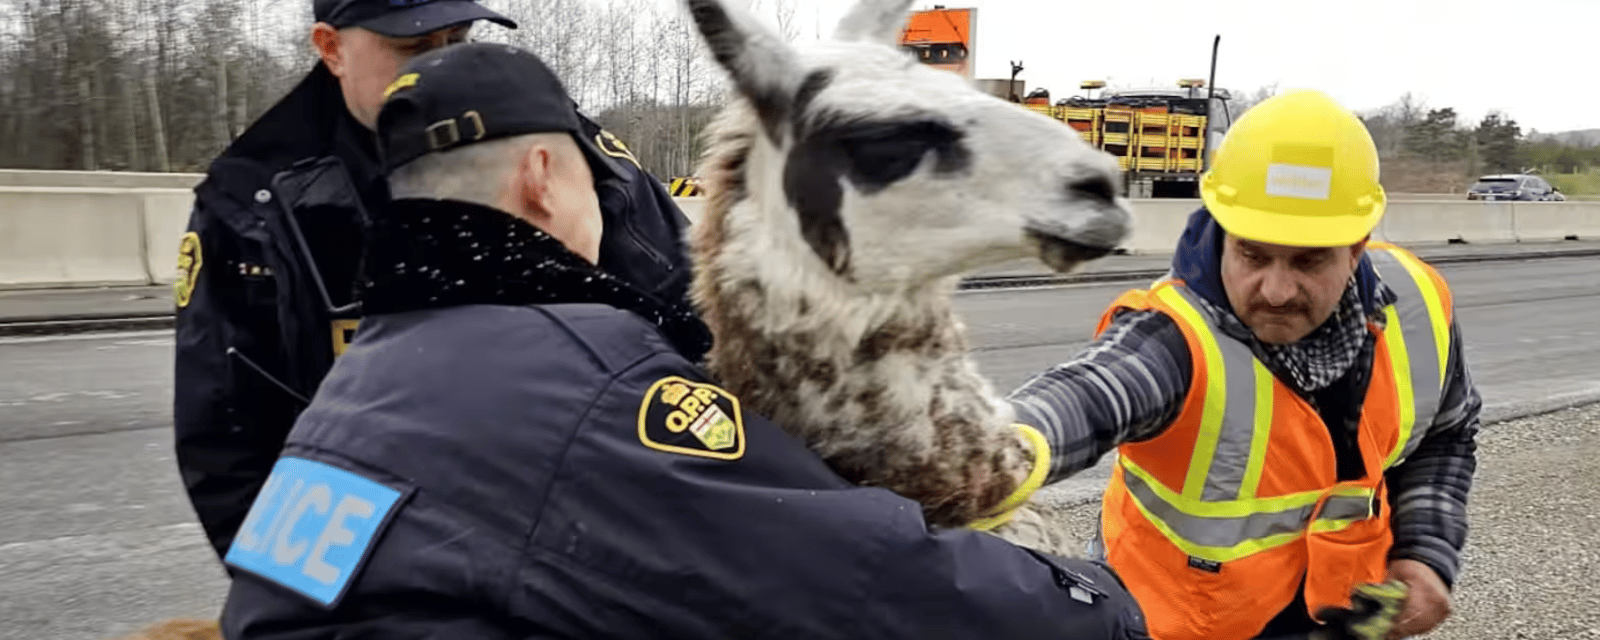 Un lama en cavale sur l'autoroute donne beaucoup de fil à retordre aux policiers 